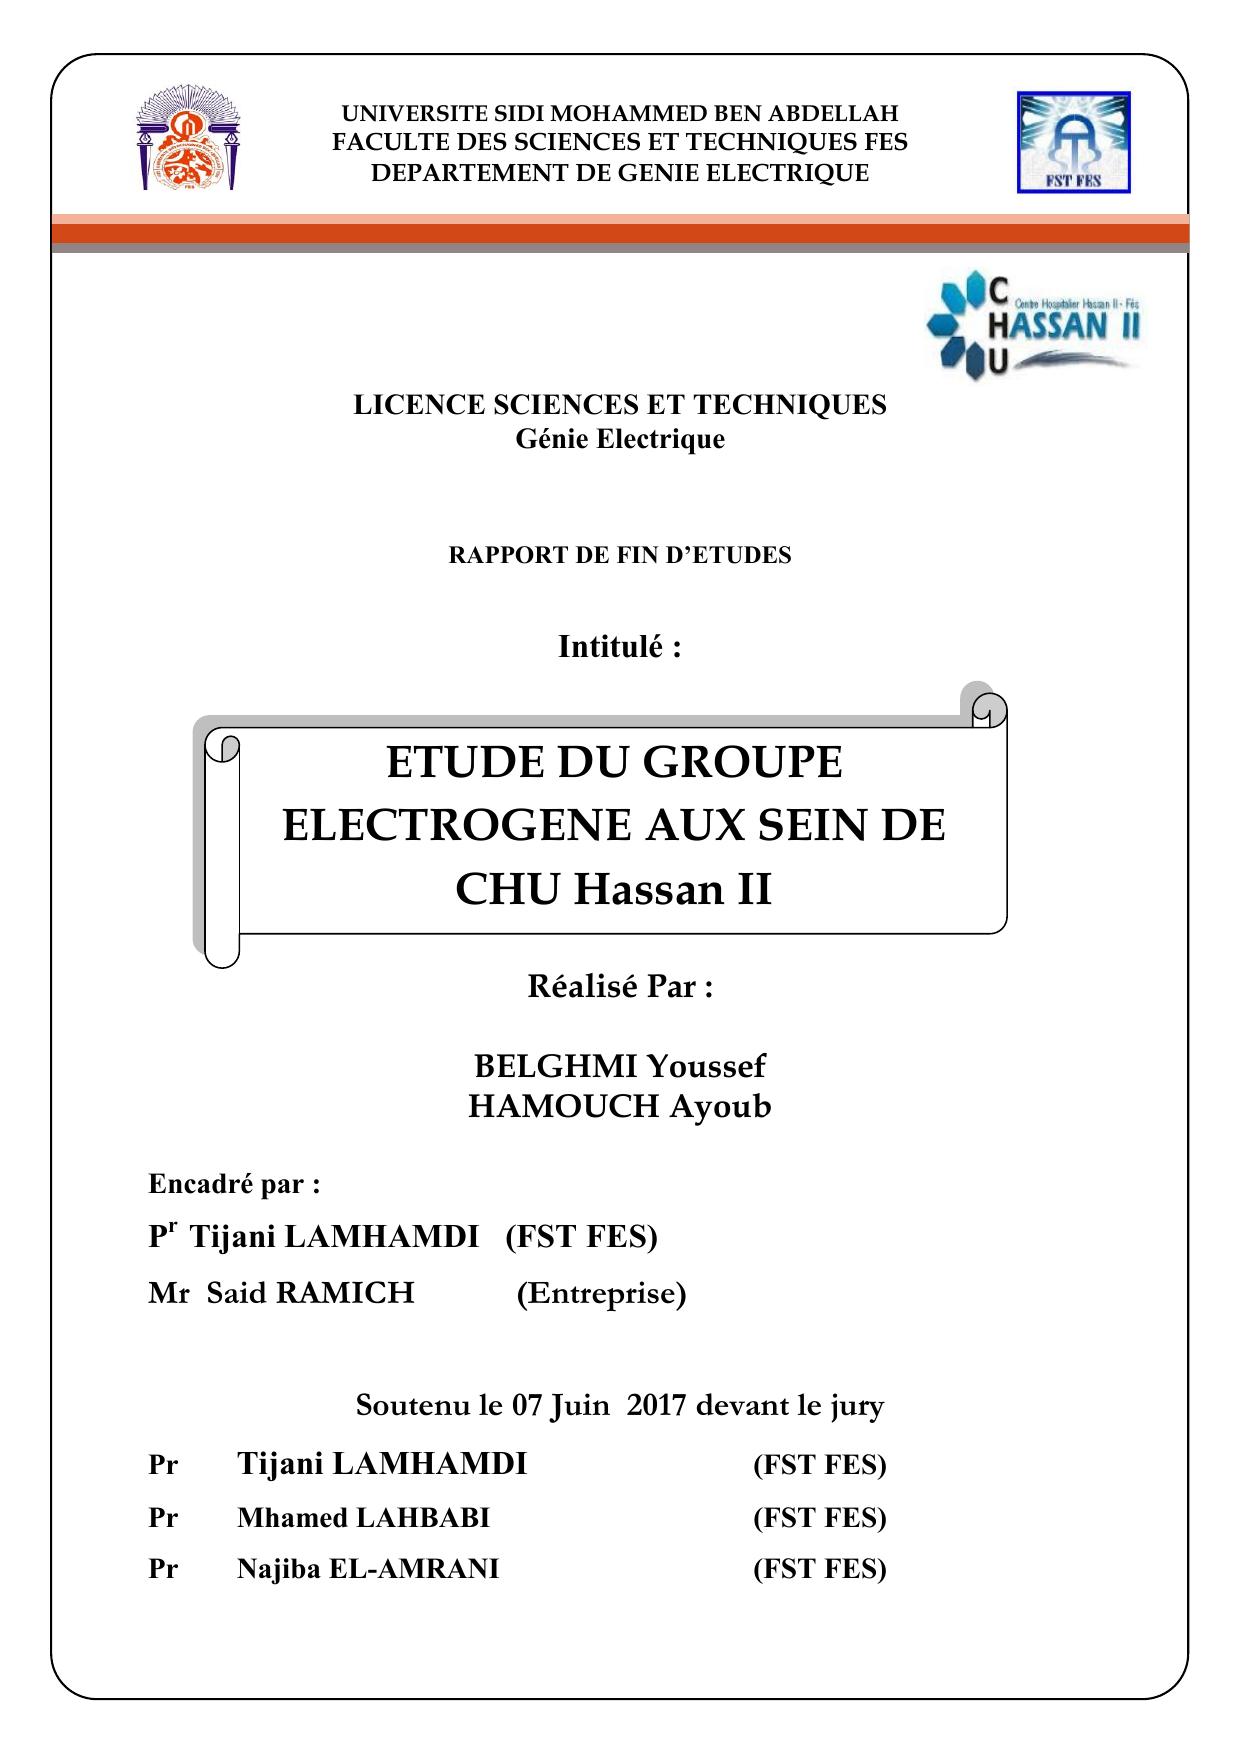 Etude du groupe électrogène aux sein de CHU Hassan II